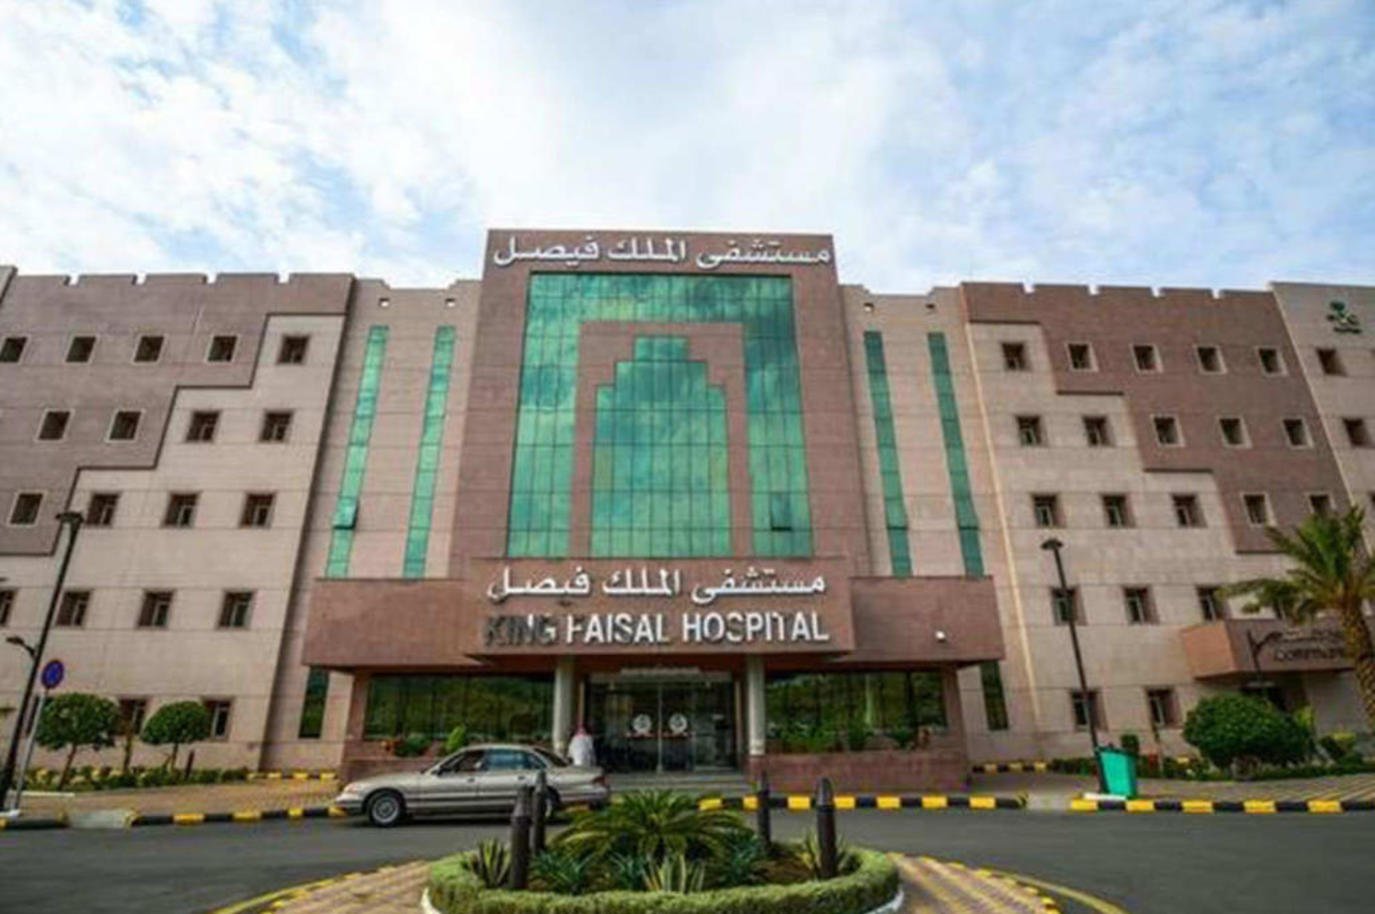 Das King Faisal Specialist Hospital gibt die Verfügbarkeit von 197 offenen Stellen für Hochschul-, Diplom- und Bachelor-Absolventen bekannt